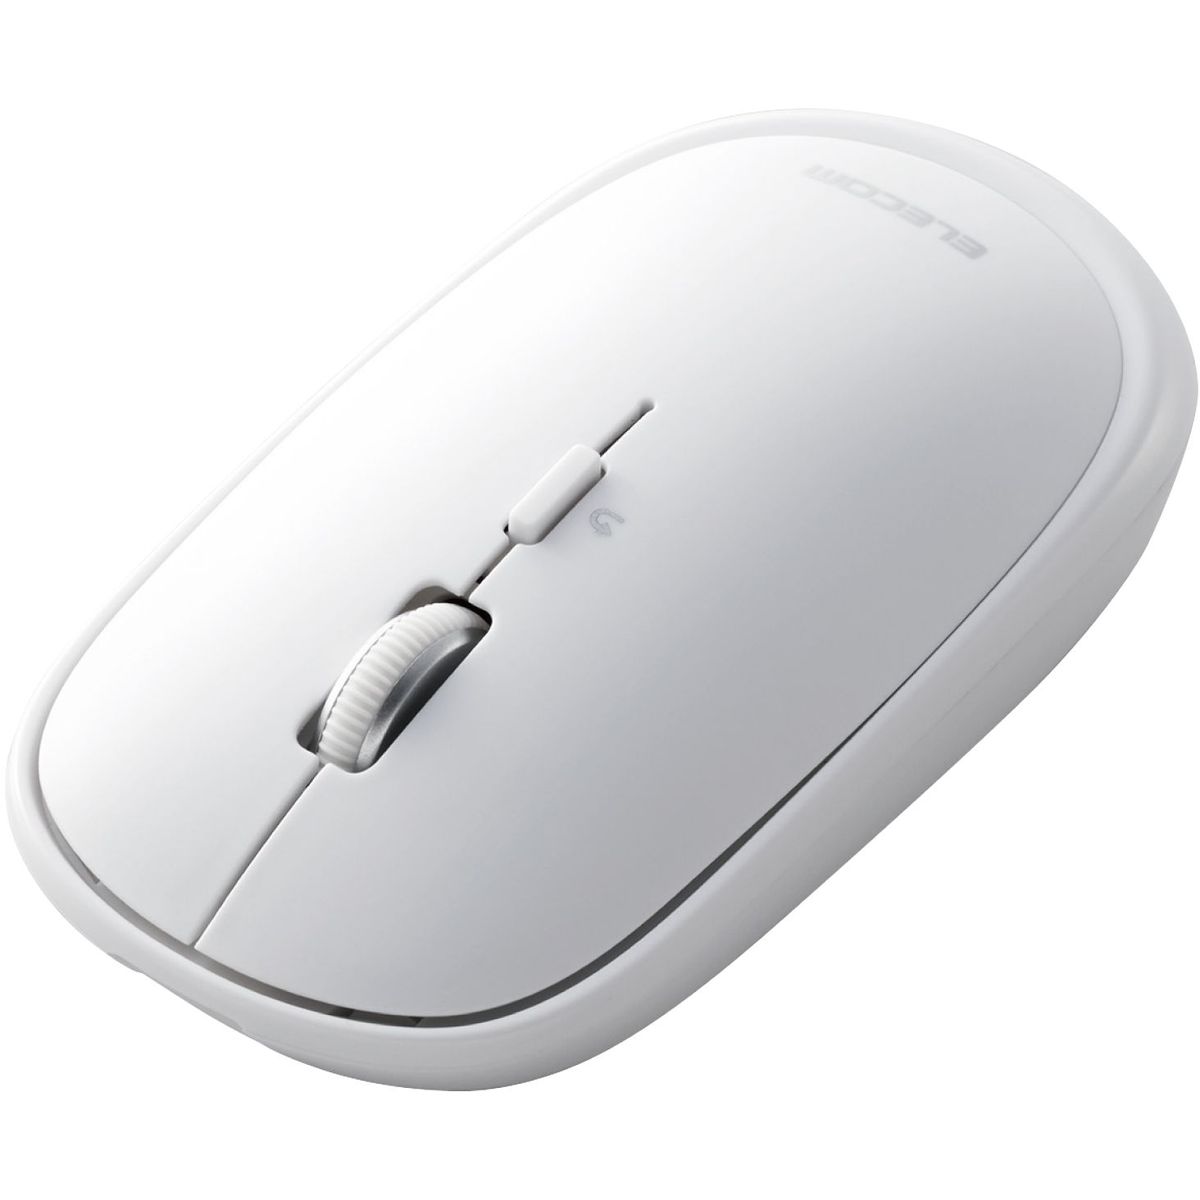 マウス/Bluetooth/4ボタン/薄型/充電式/ホワイト